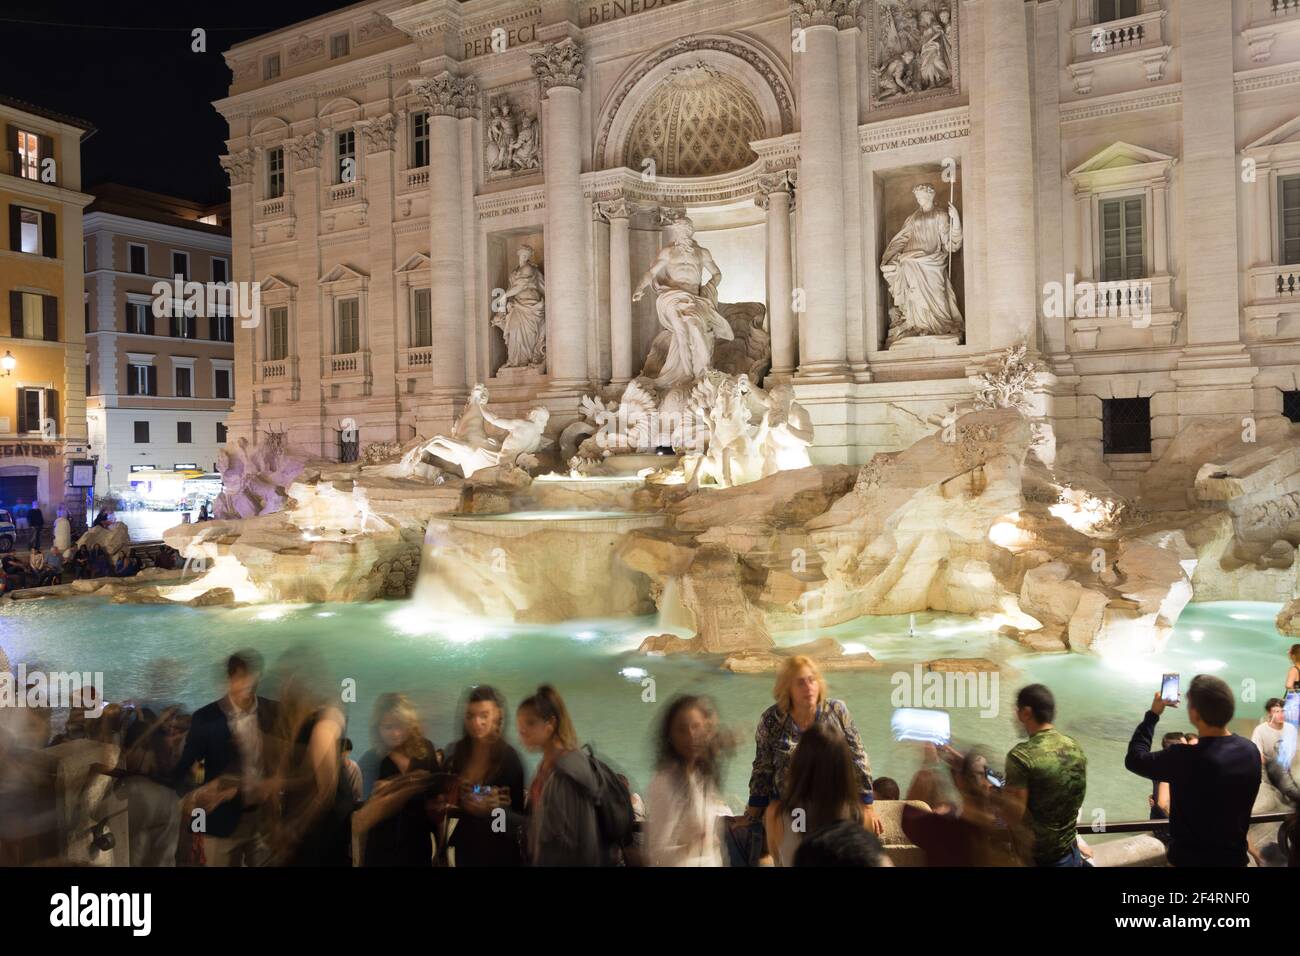 Roma, Italia - 04 de octubre de 2018: Noche de trong cerca de la Fontana de Trevi en Roma Foto de stock